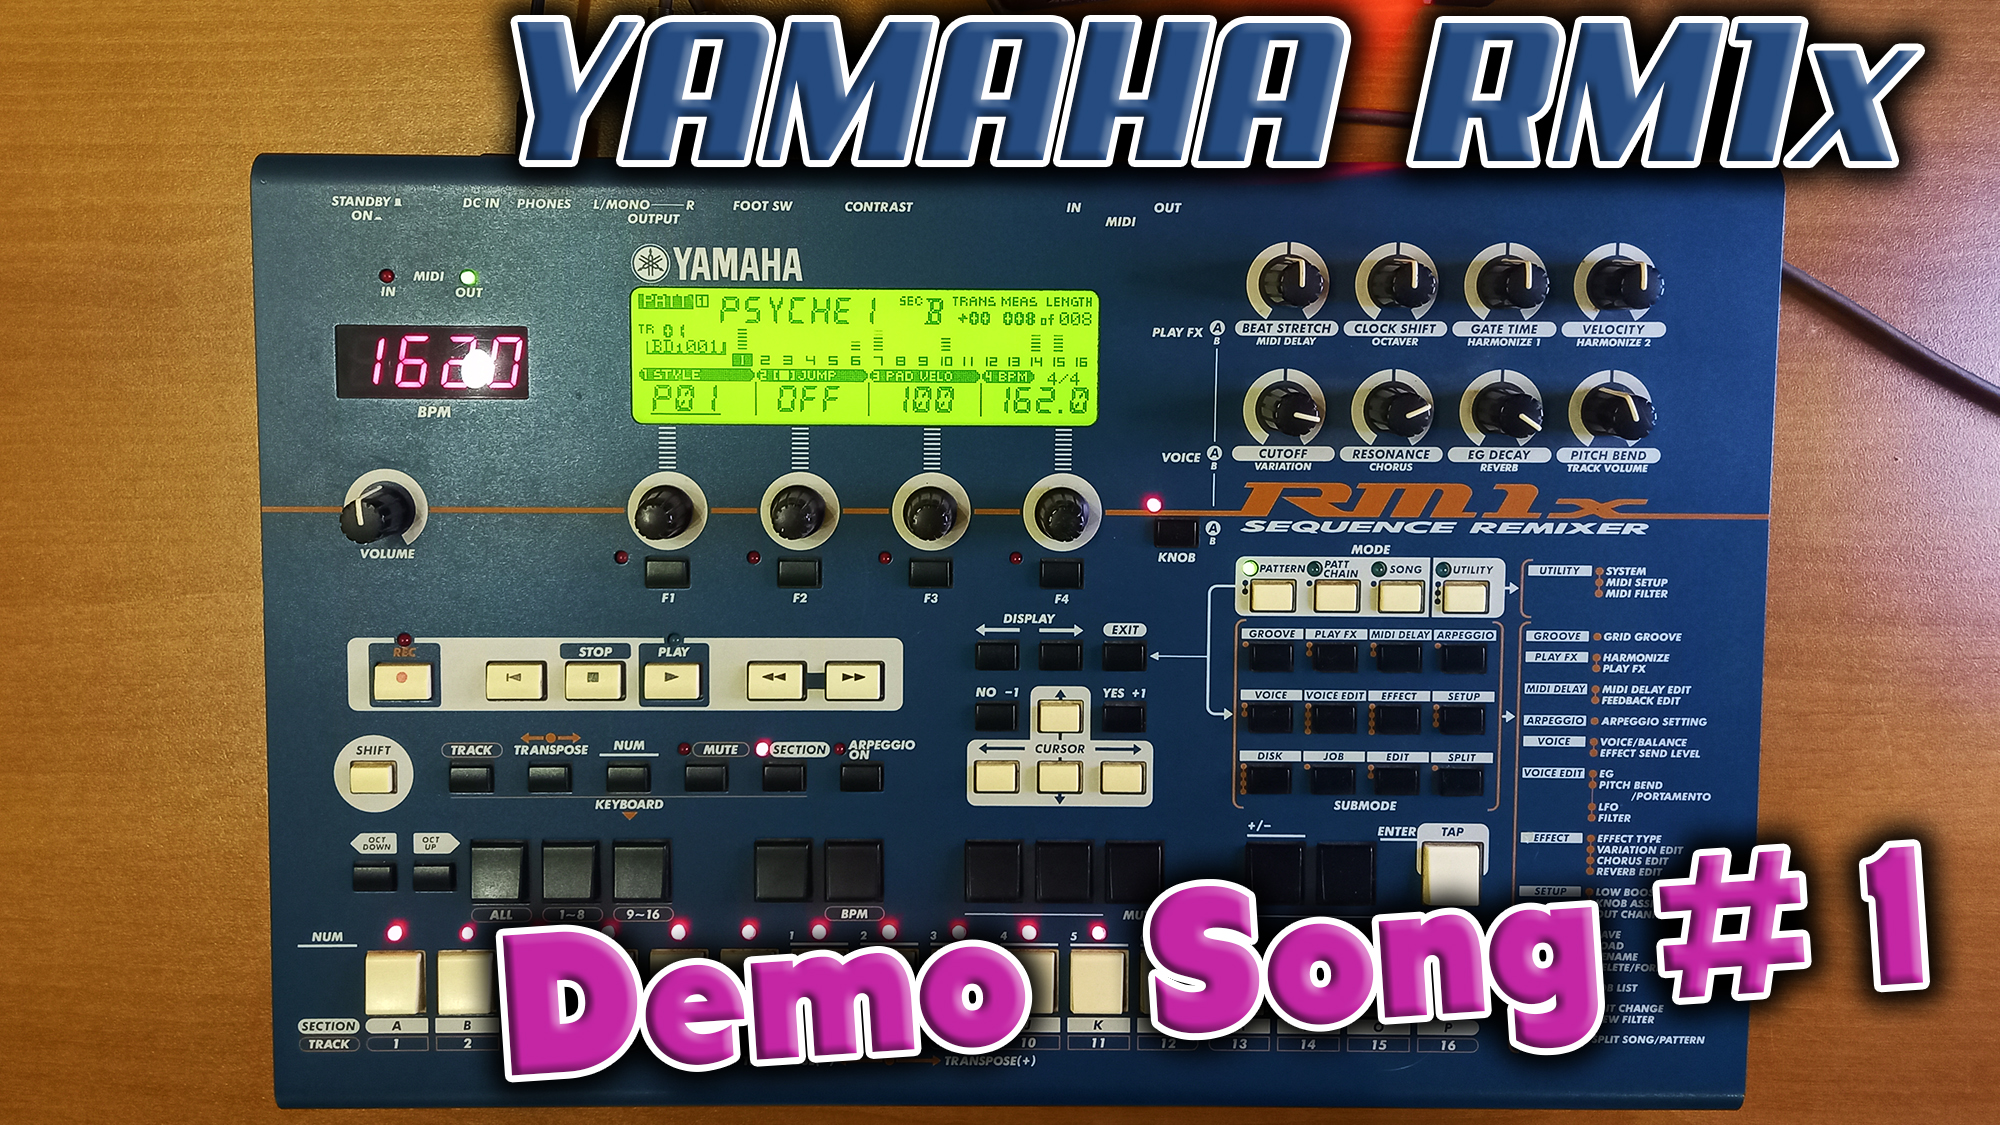 Грувбокс из далёкого 1999 года - Yamaha RM1x !  Слушаем Demo song #1